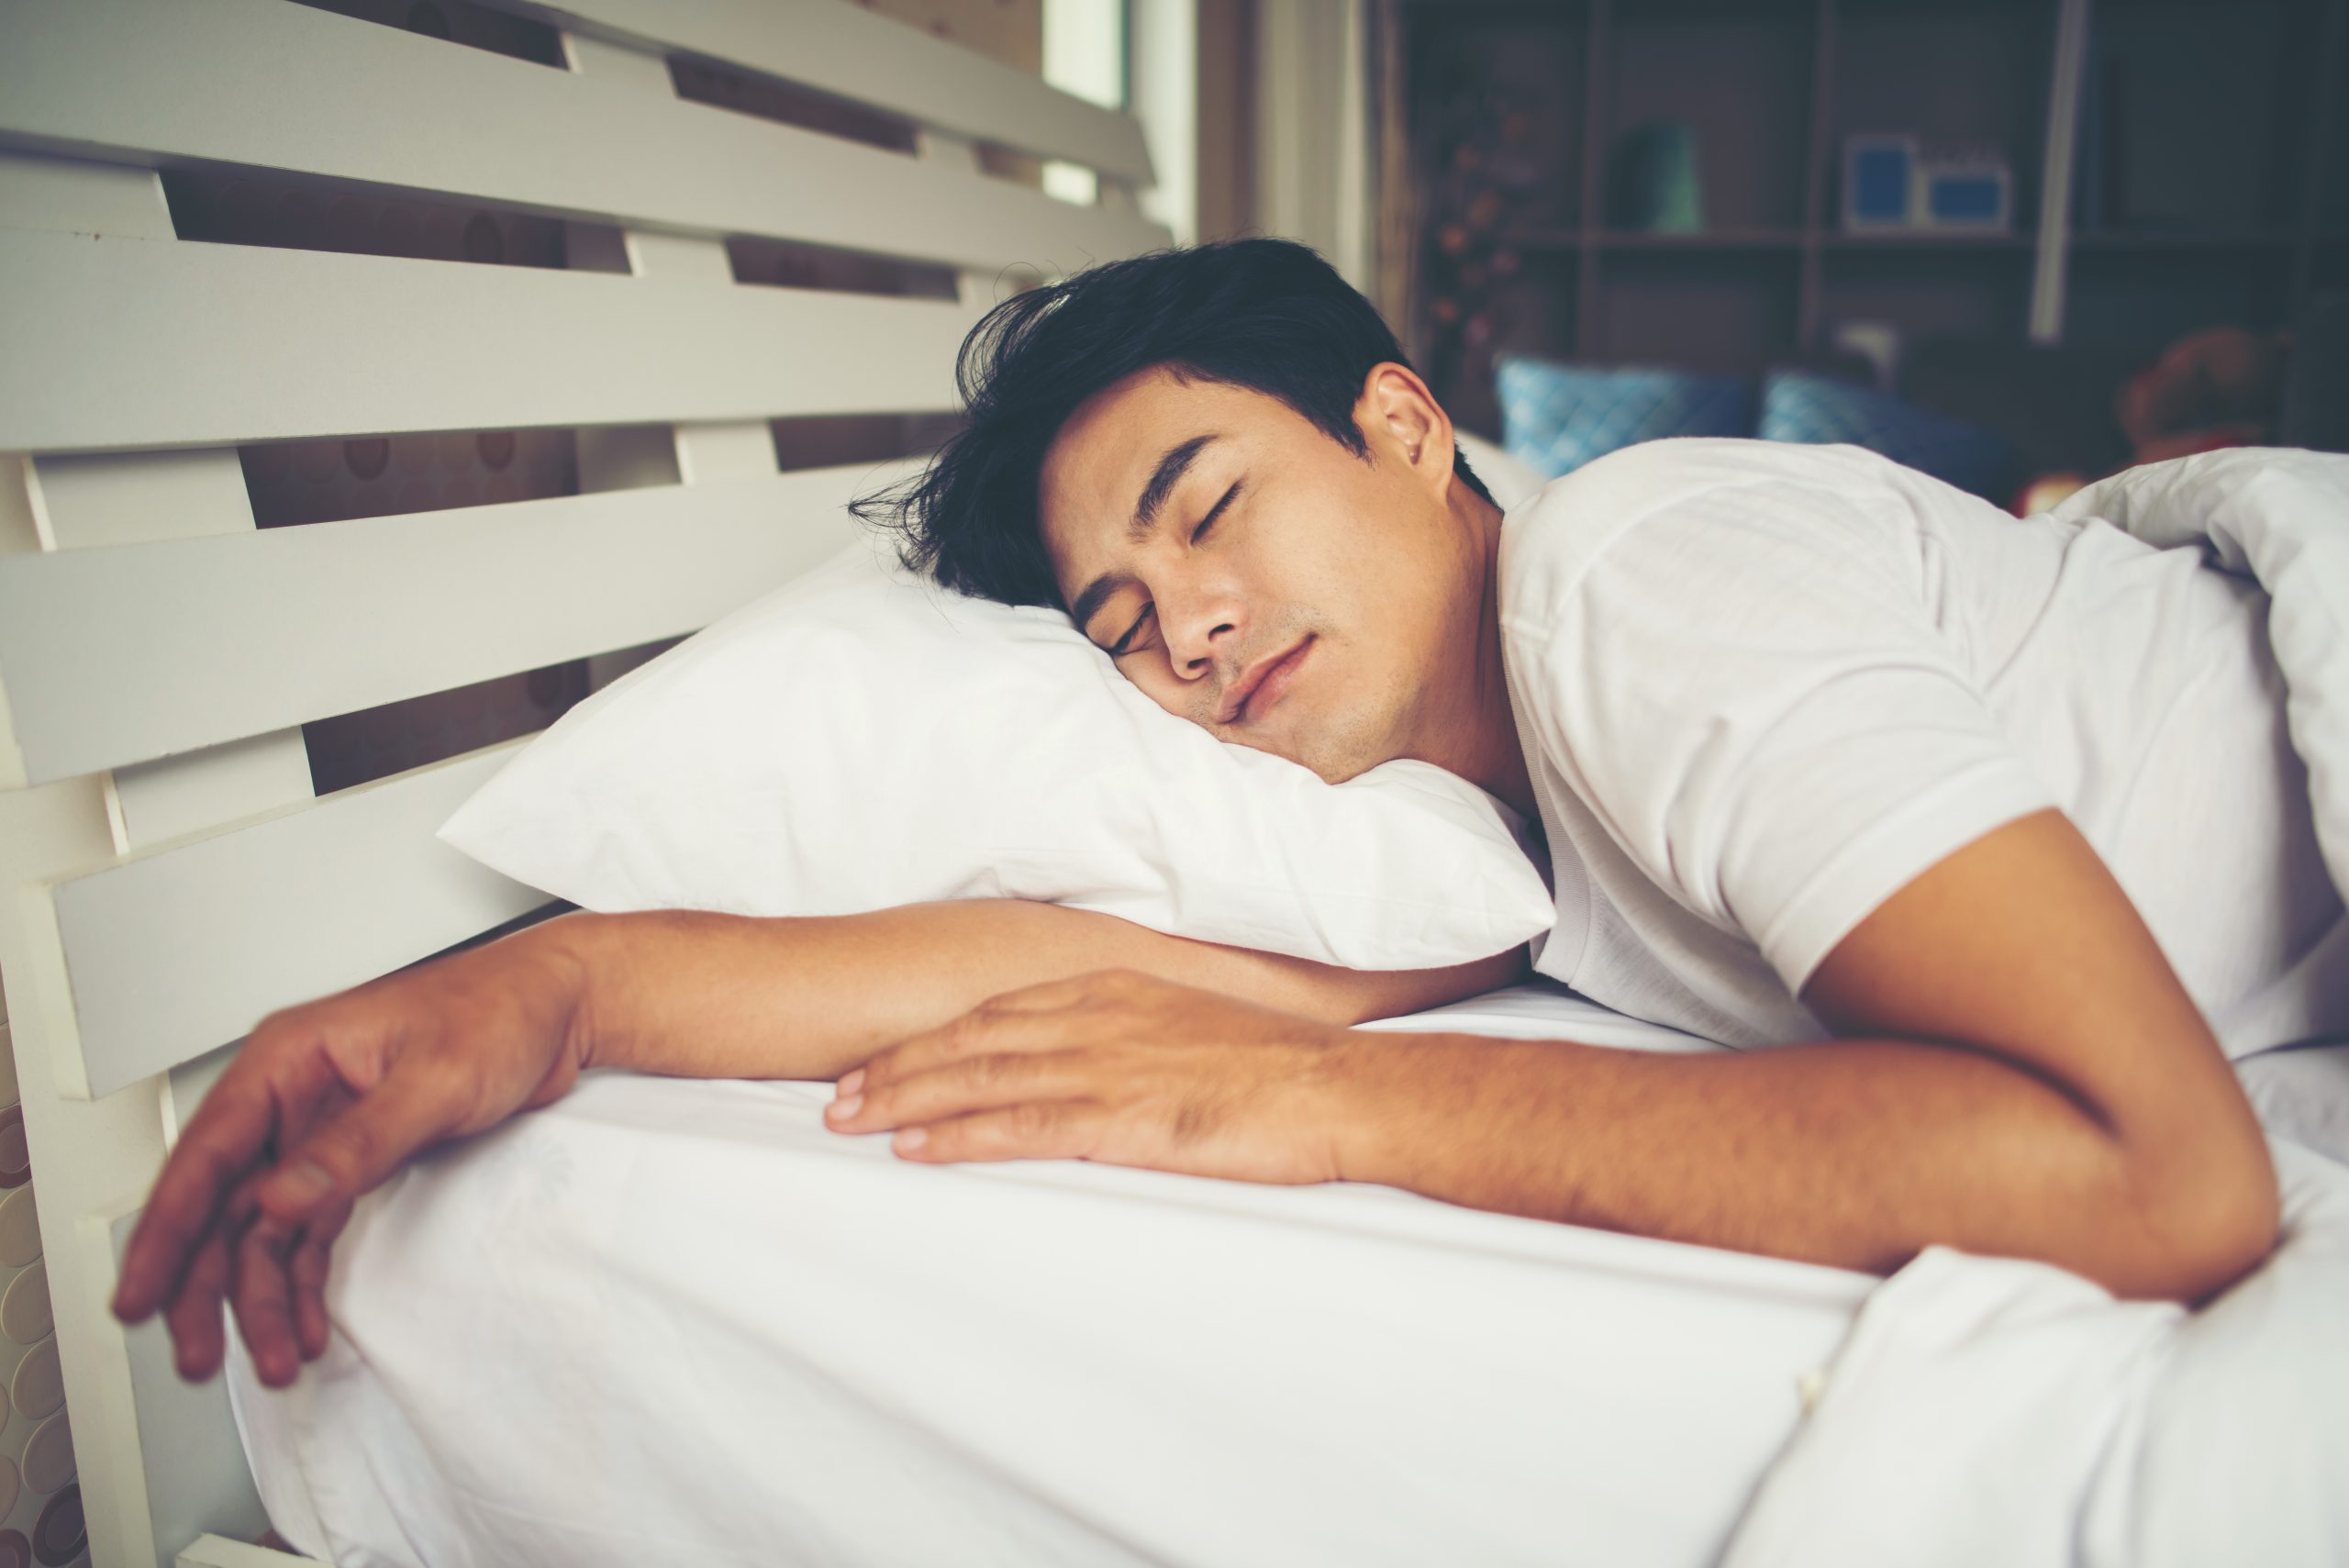 5 Cara Agar Cepat Tidur, Buat Kamu Yang Insomnia!